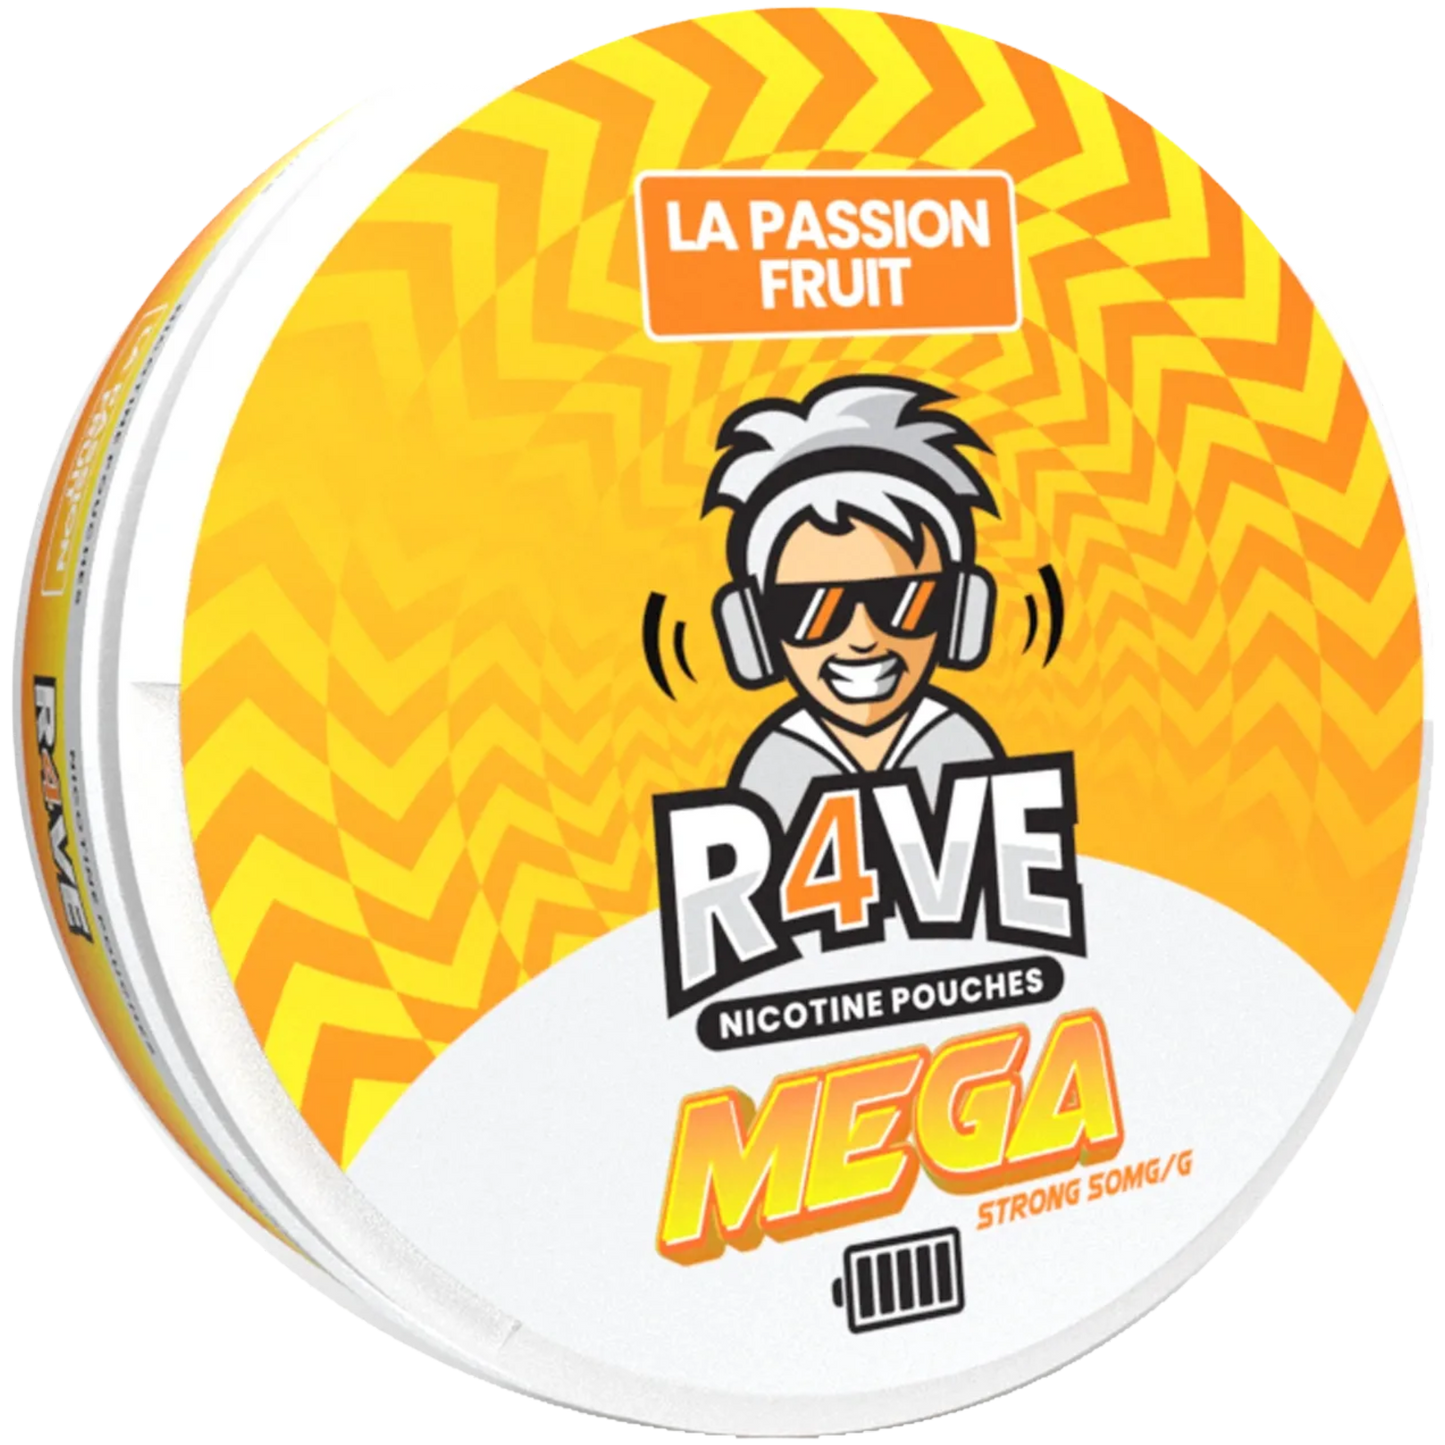 Rave La Passion Fruit - 50mg